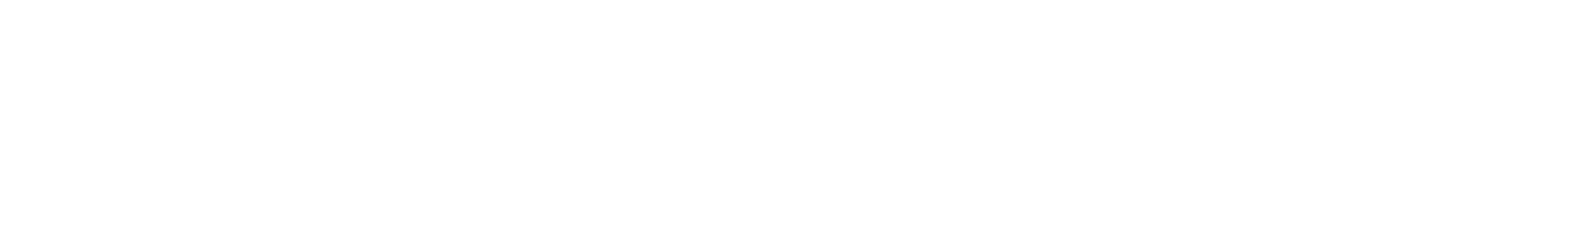 長庚醫療財團法人全球資訊網 下方 Logo